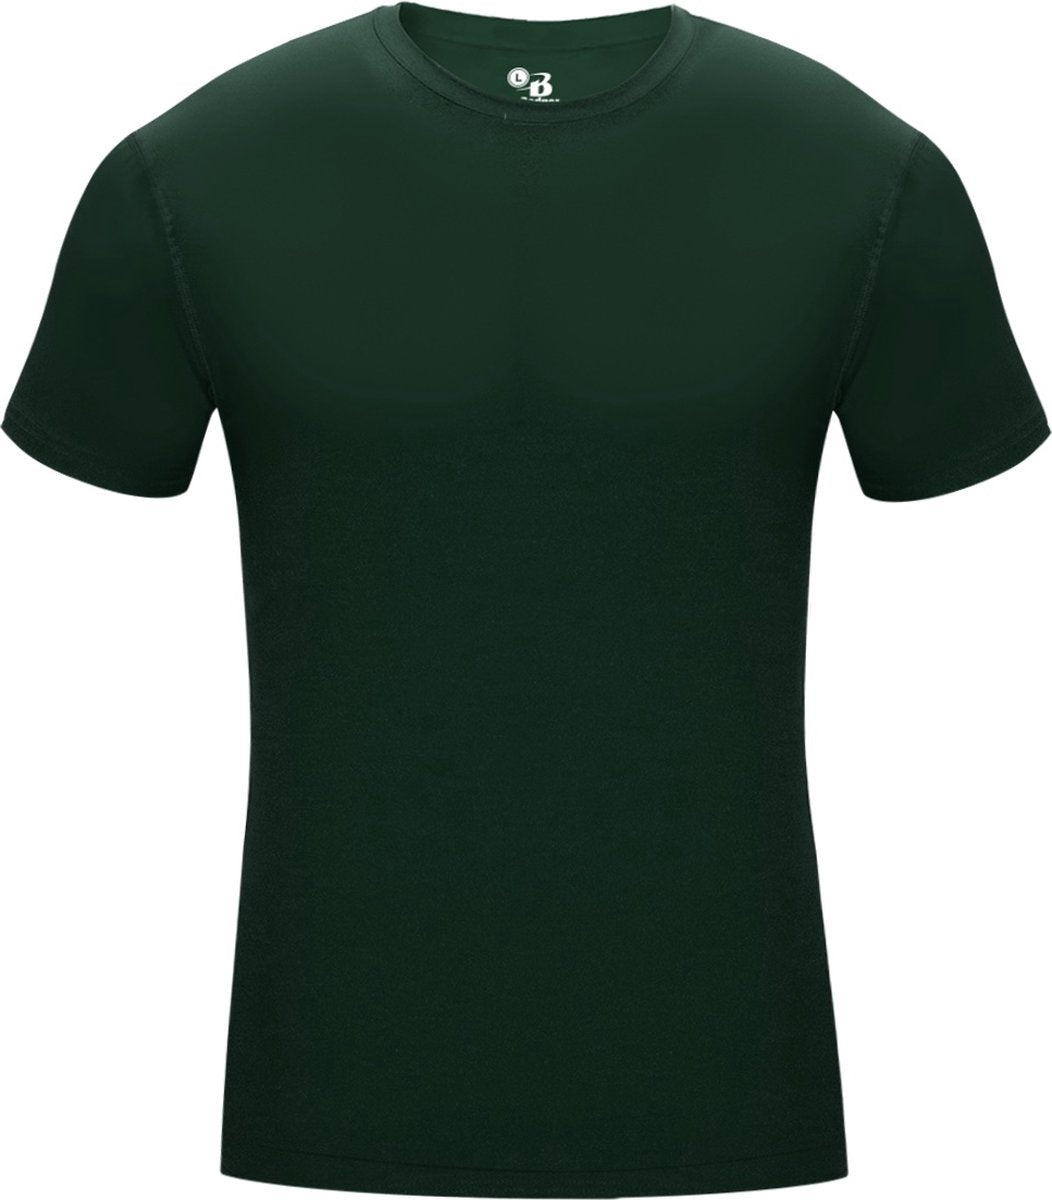 Kurzarmshirt – Pro Compression – Herren-Unterhemd